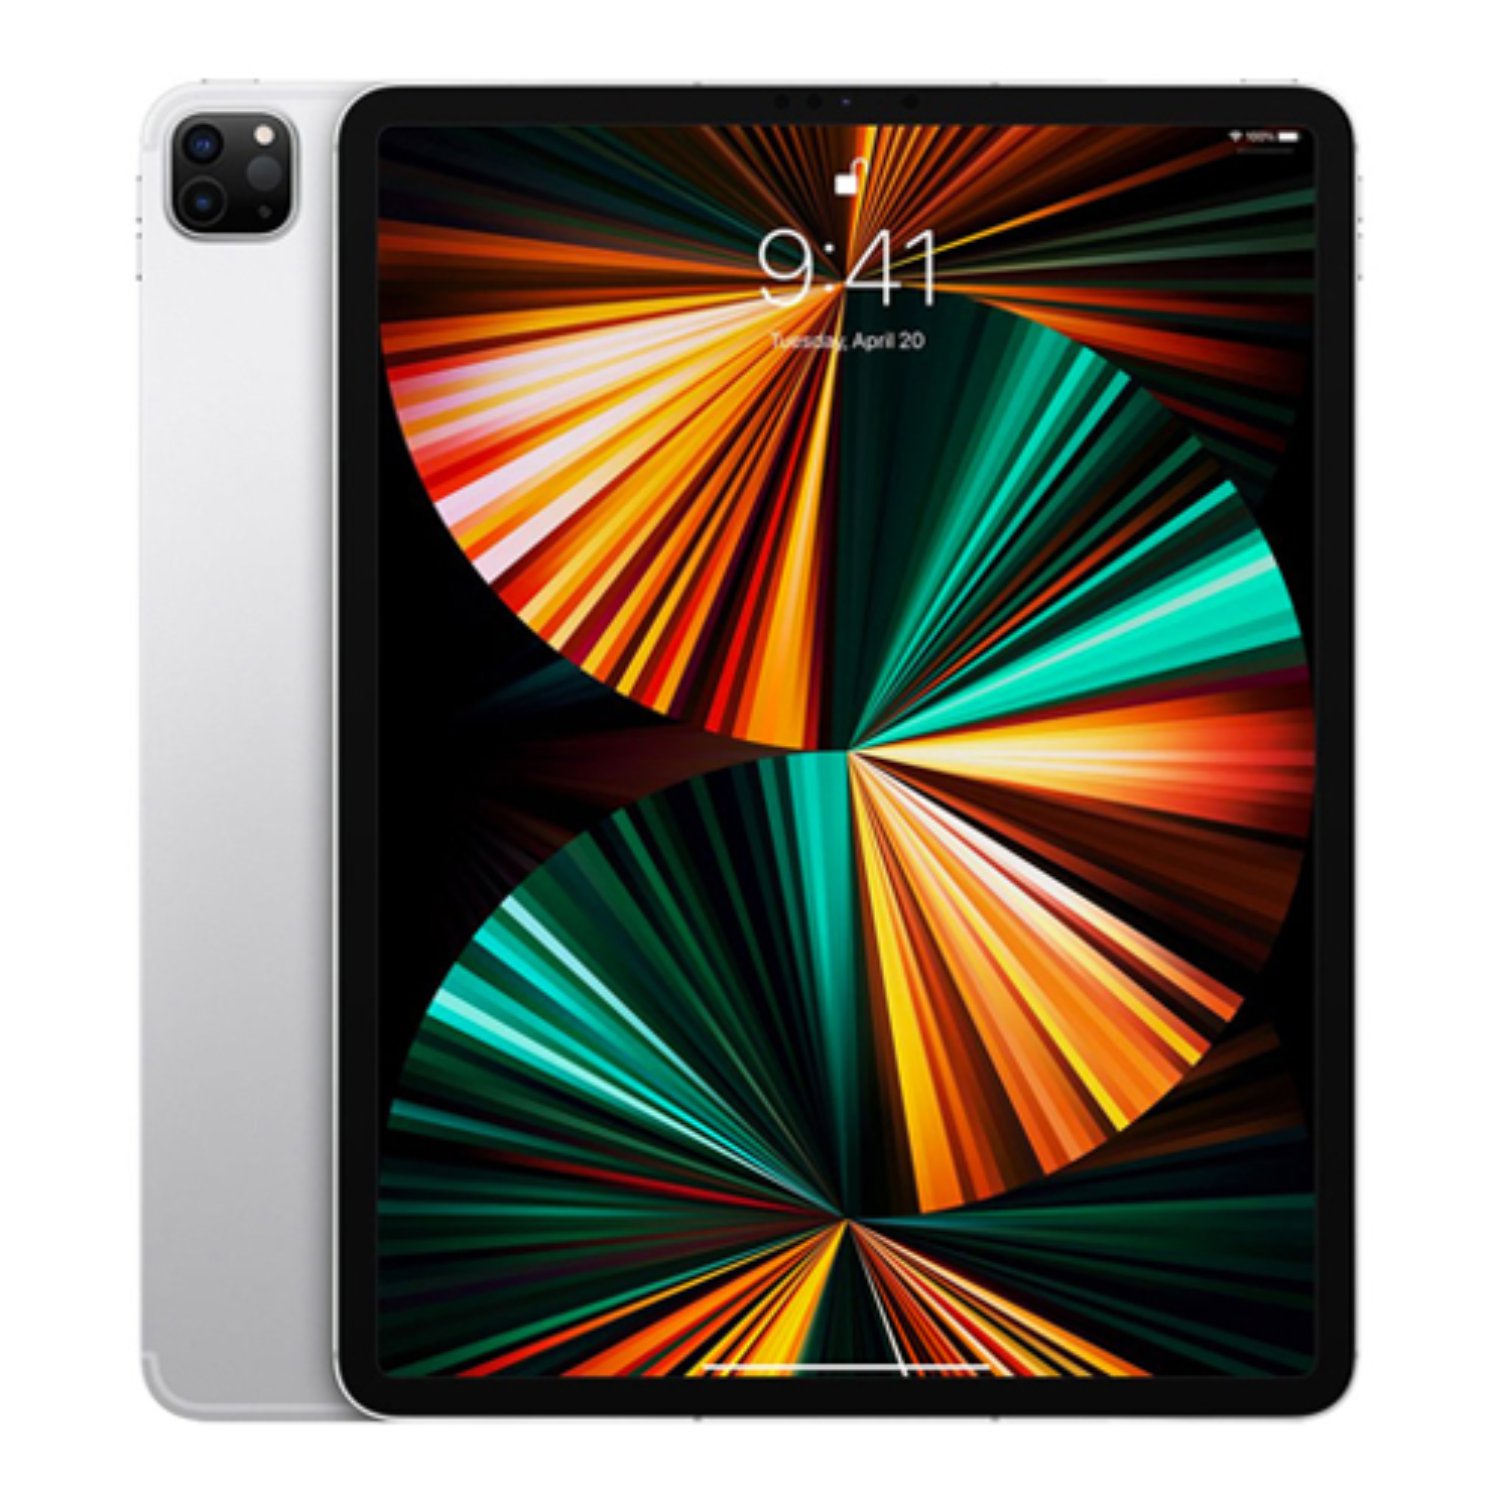 آیپد پرو 12.9 اینچ 2021 M1 اپل حافظه 512 گیگابایت 5G مدل Apple iPad Pro 12.9 inch 4th Gen 8GB-512GB 5G 2021 M1  